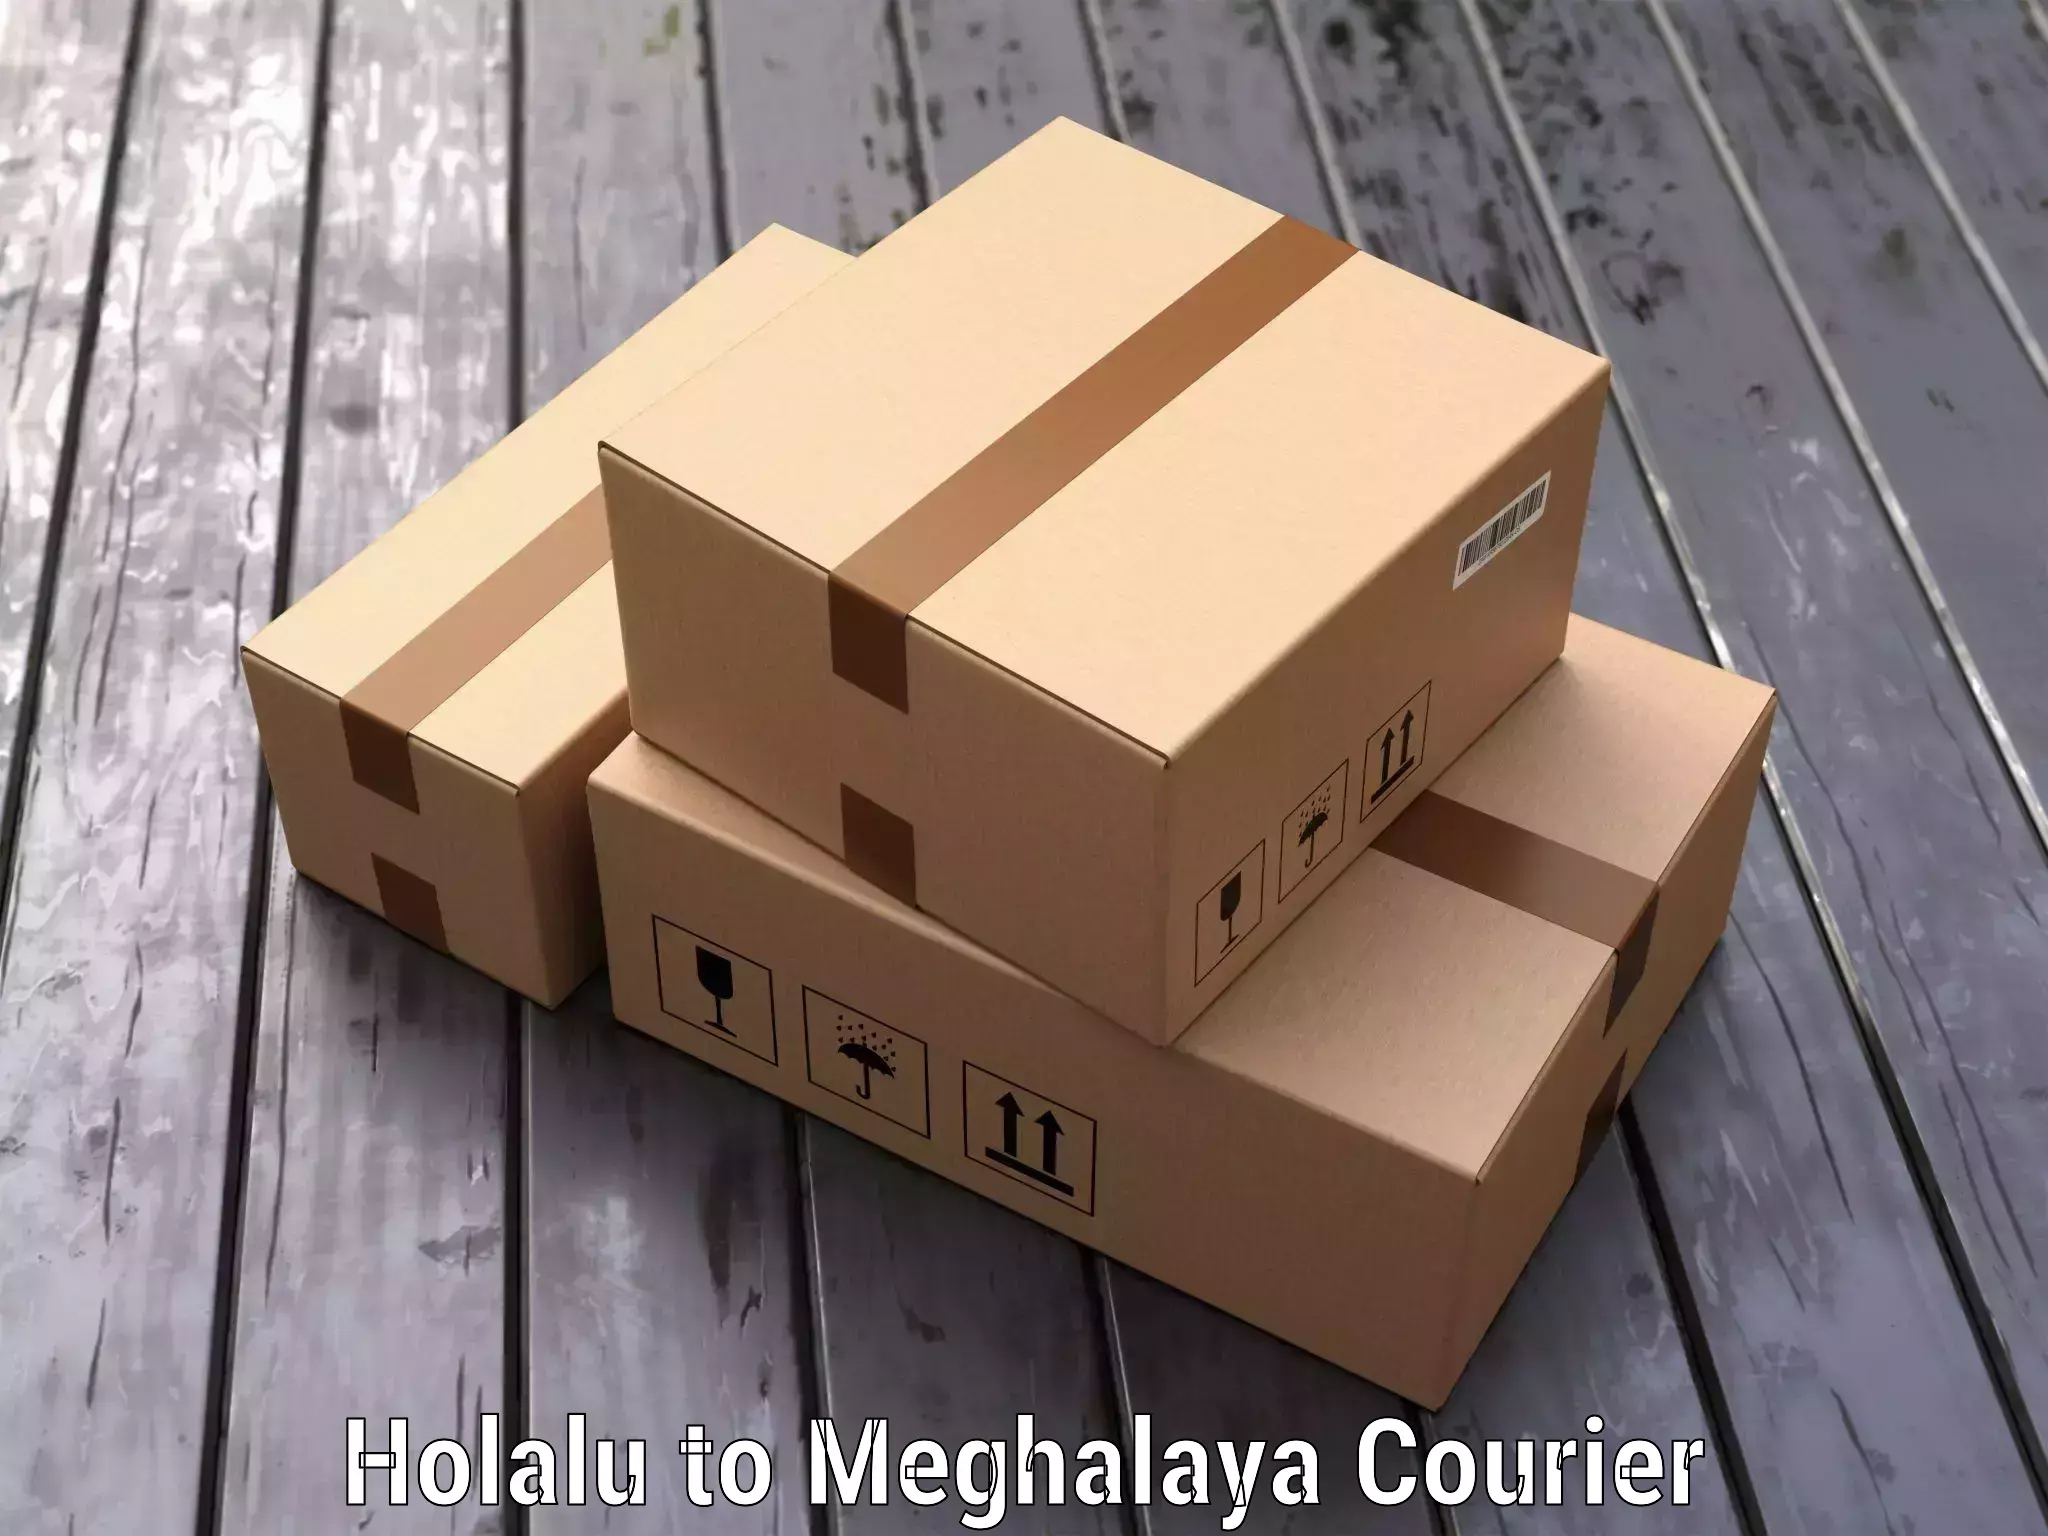 Luggage transport service Holalu to Meghalaya